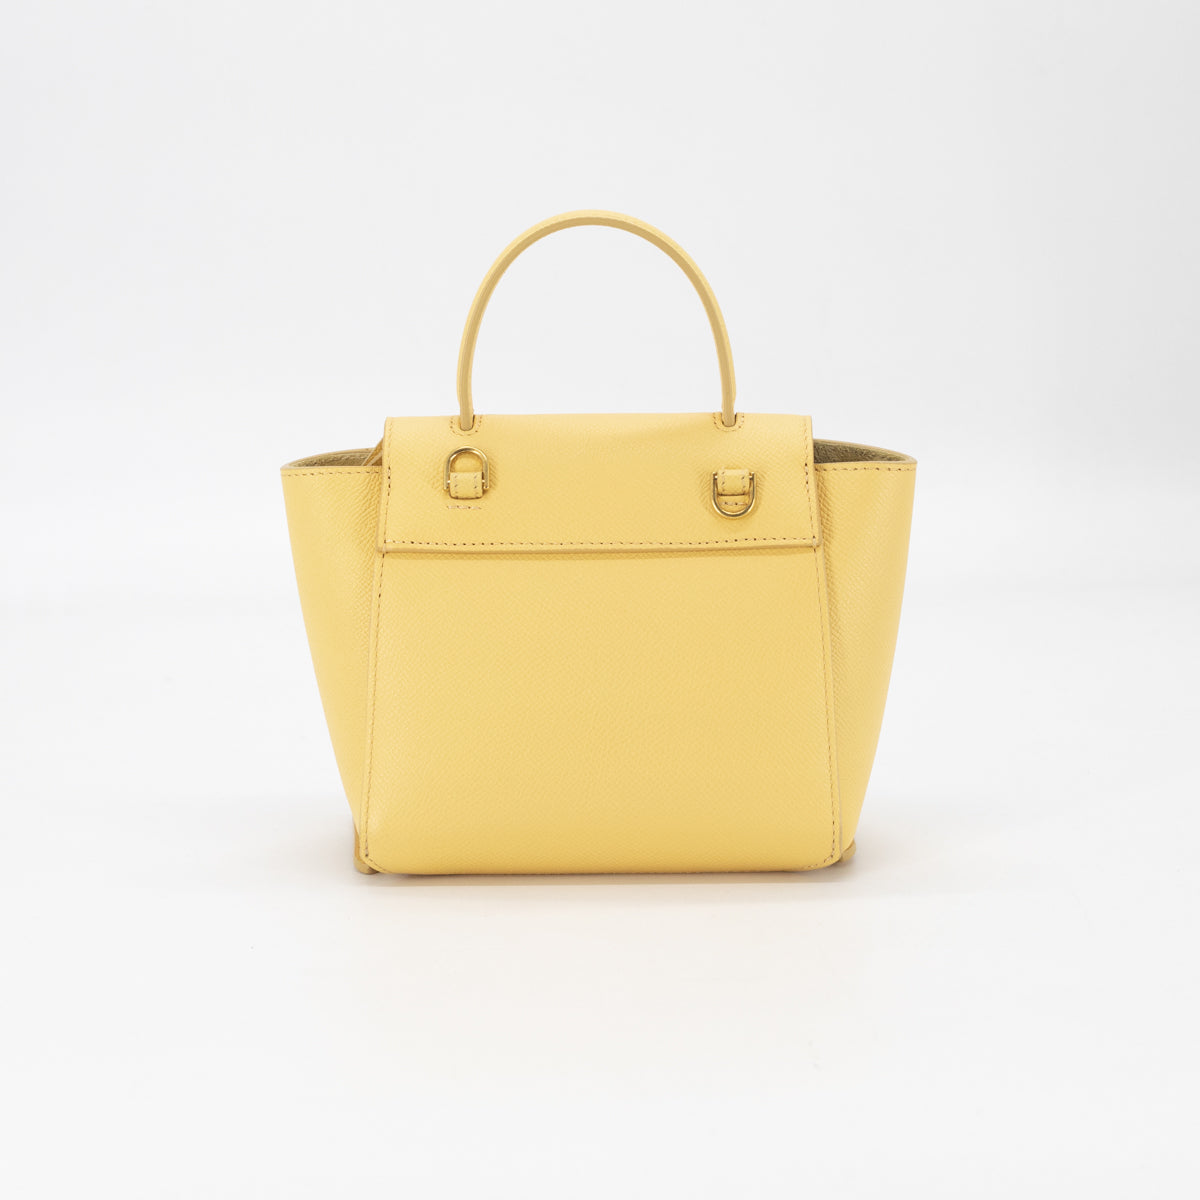 Got my dream bag; Celine belt bag in pico-question in comment. :  r/luxurypurses